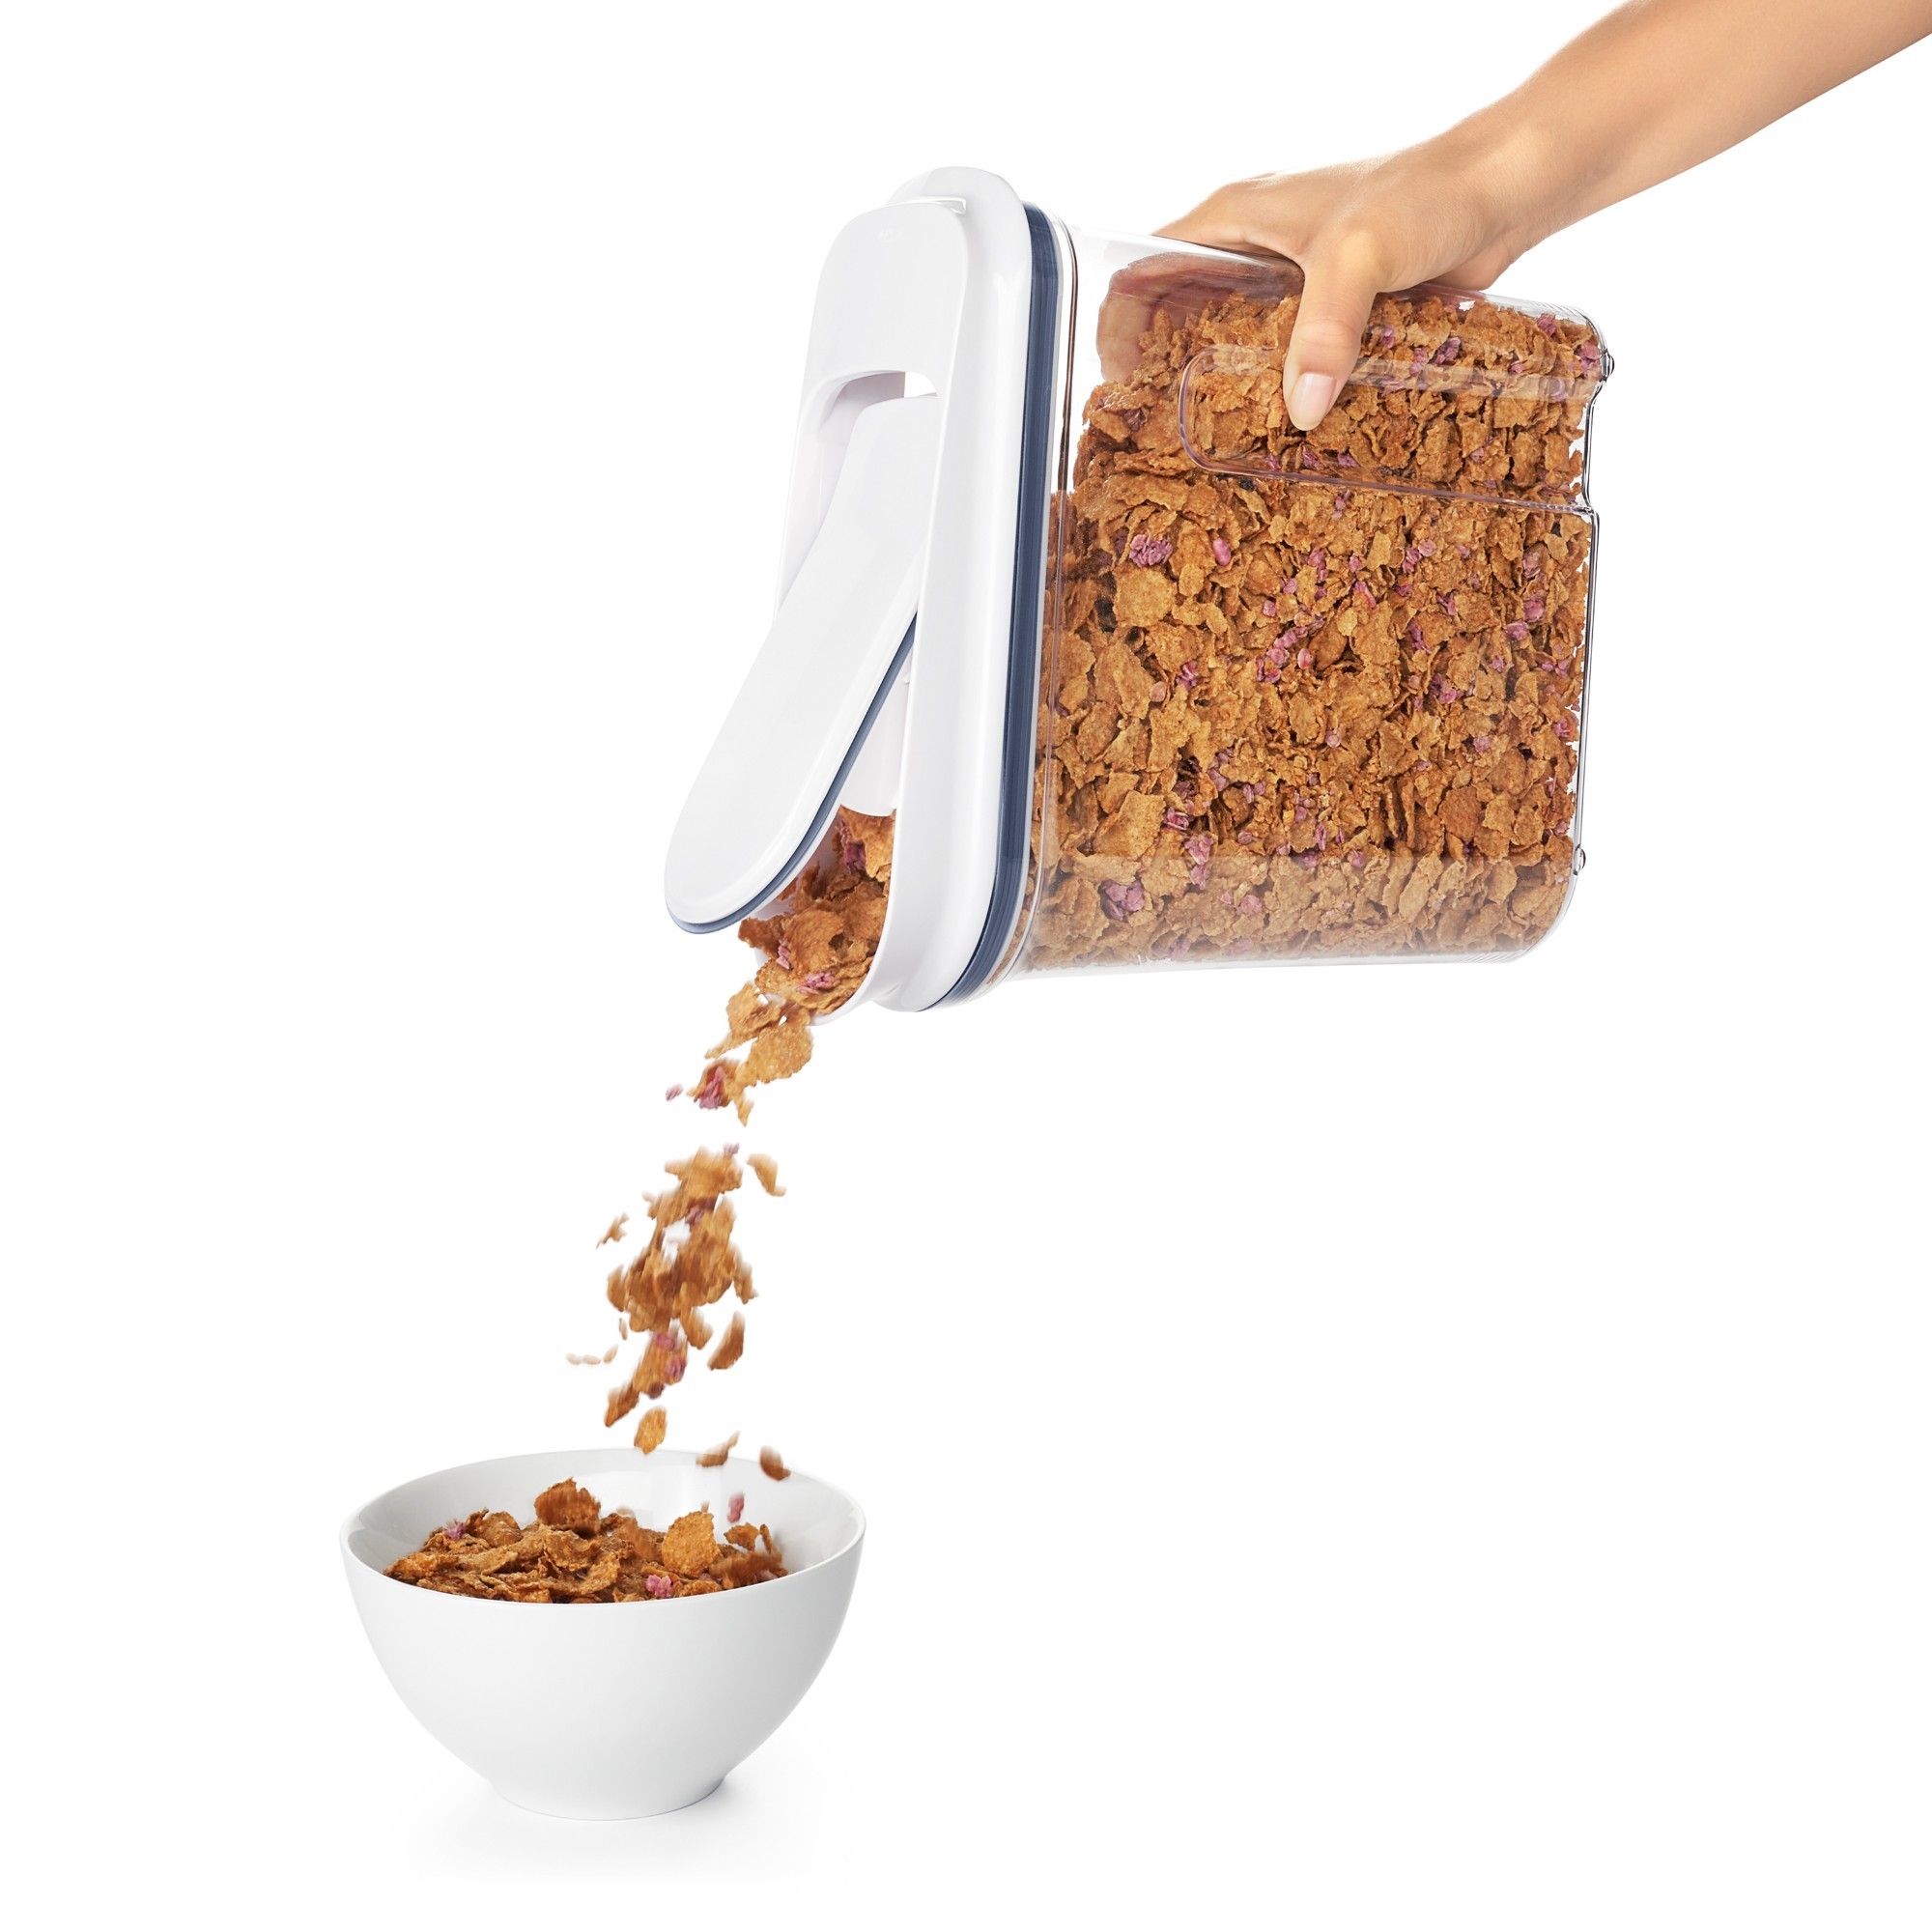 OXO Good Grips Pop 4.2l Cereal Storage Dispenser